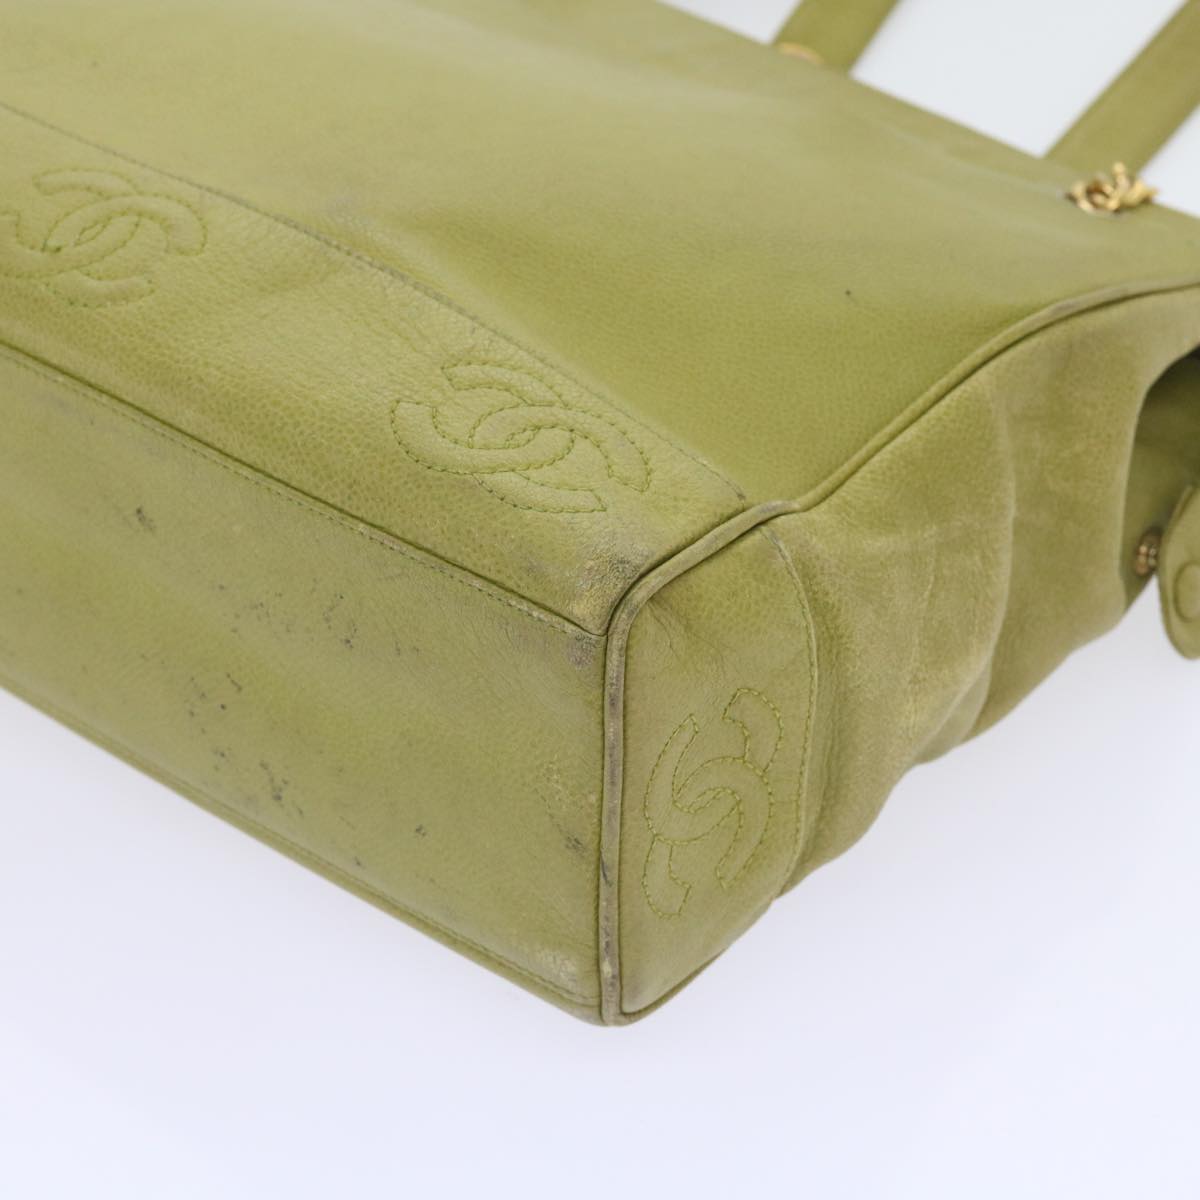 CHANEL Chain Shoulder Bag Caviar Skin Green CC Auth bs8909